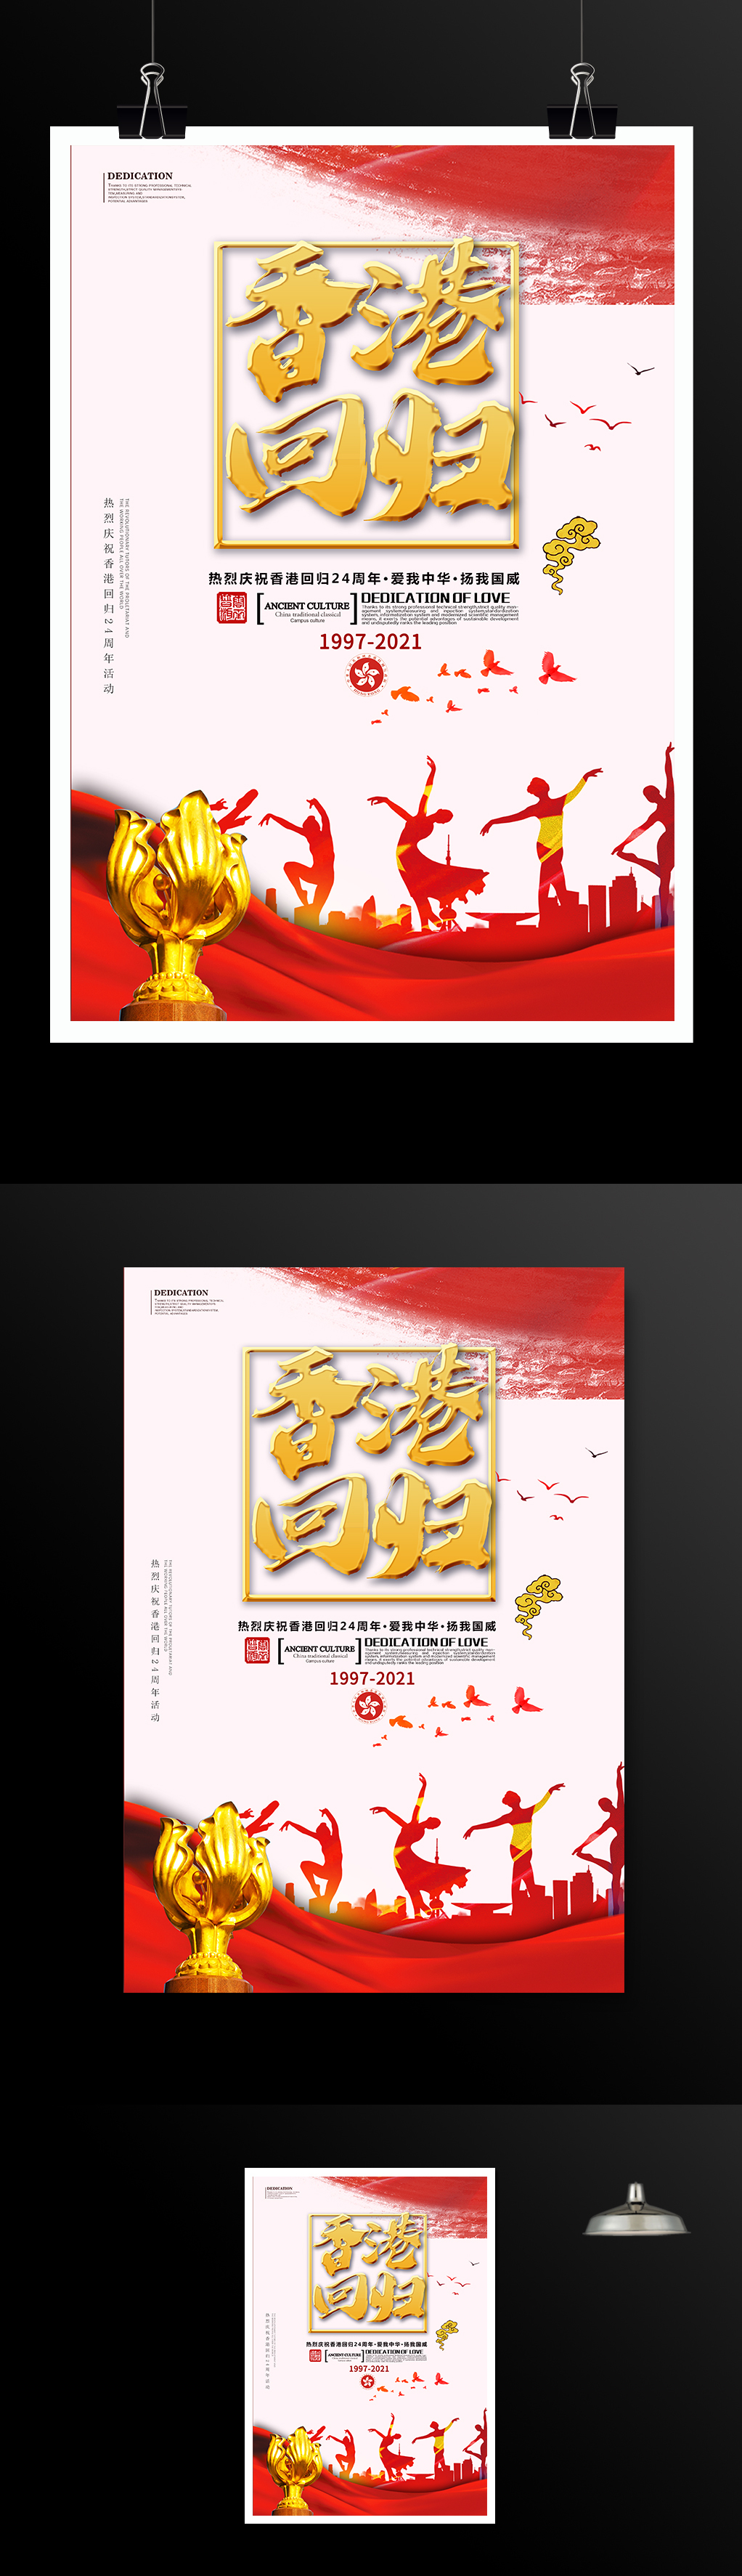 香港回归24周年海报设计